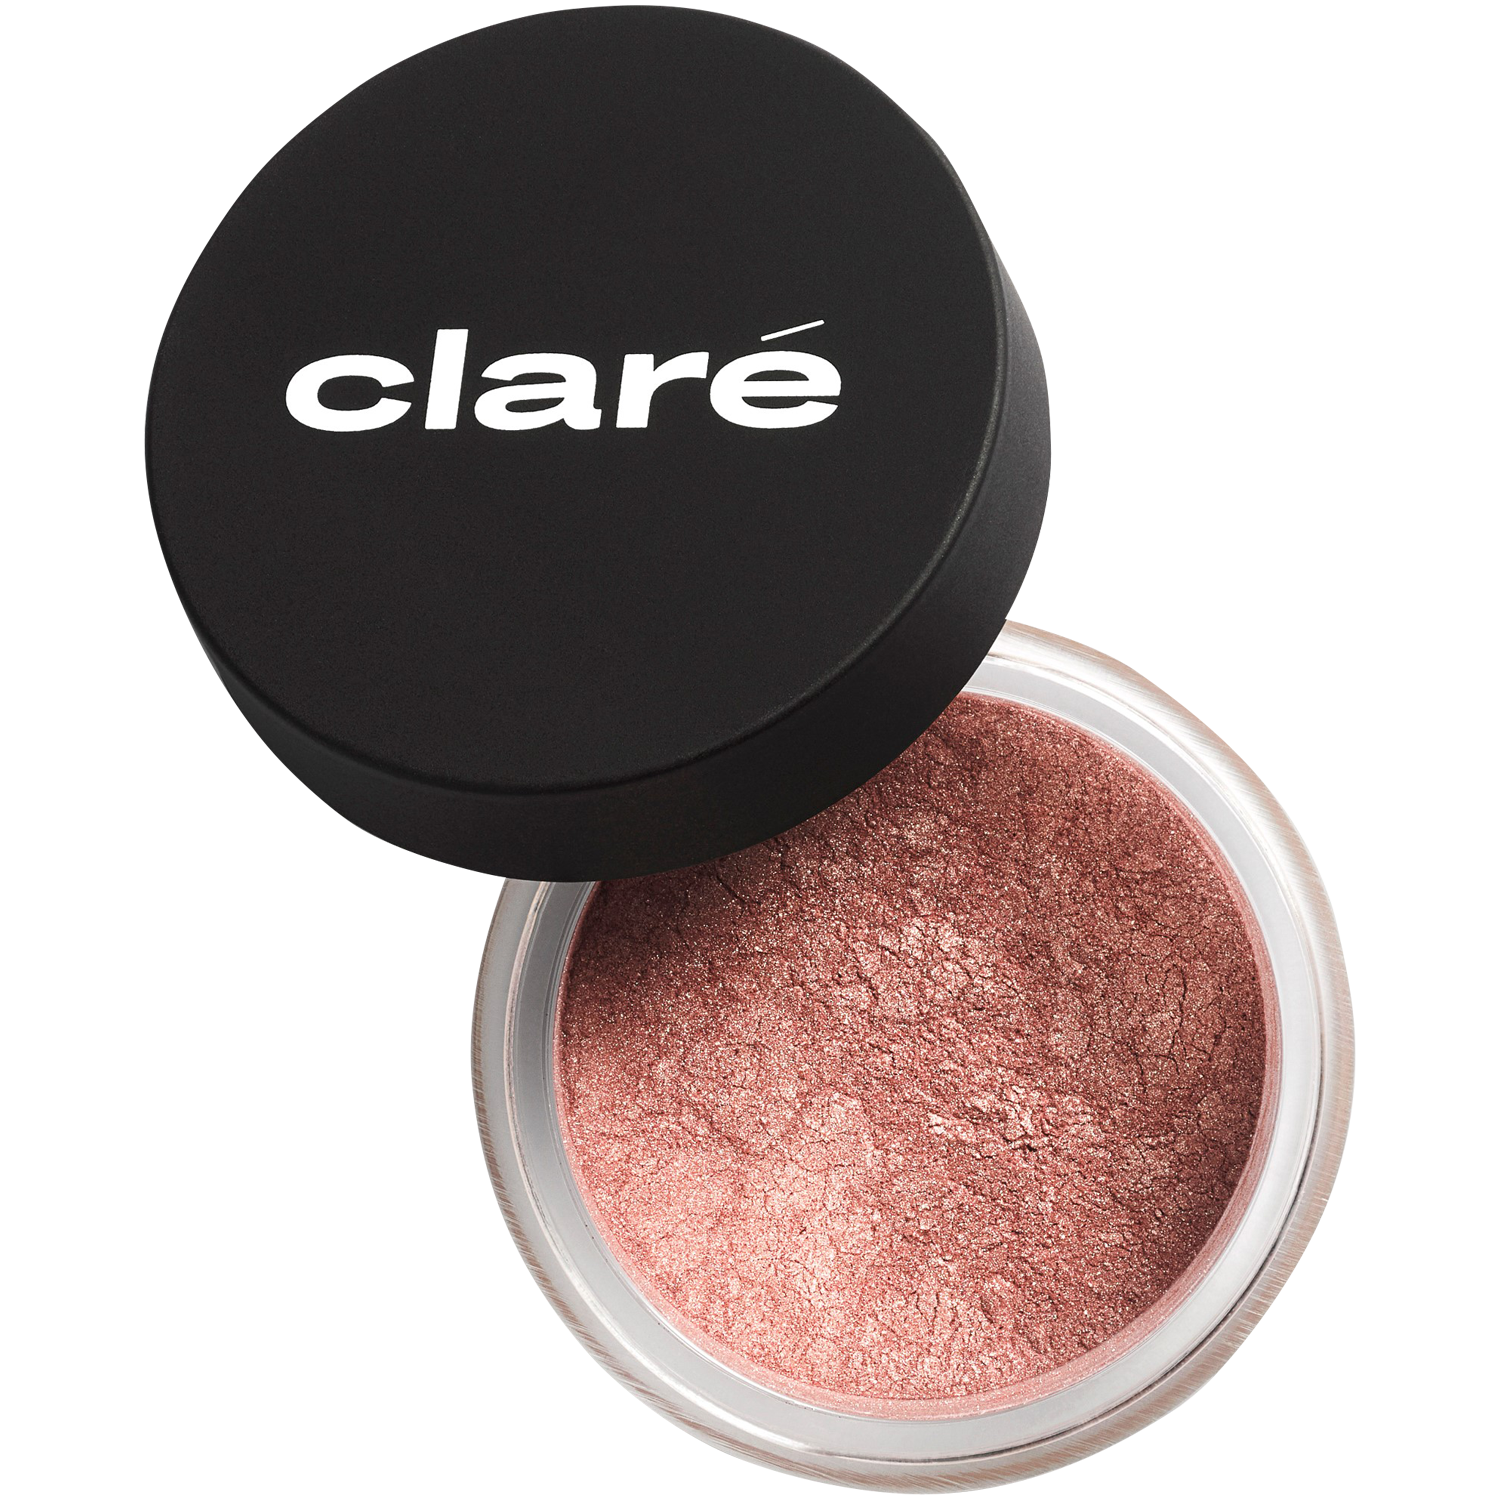 Атласные тени для век холодного телесного цвета 900 Claré Clare Makeup, 0,4 гр атласные тени для век холодного телесного цвета 900 claré clare makeup 1 гр